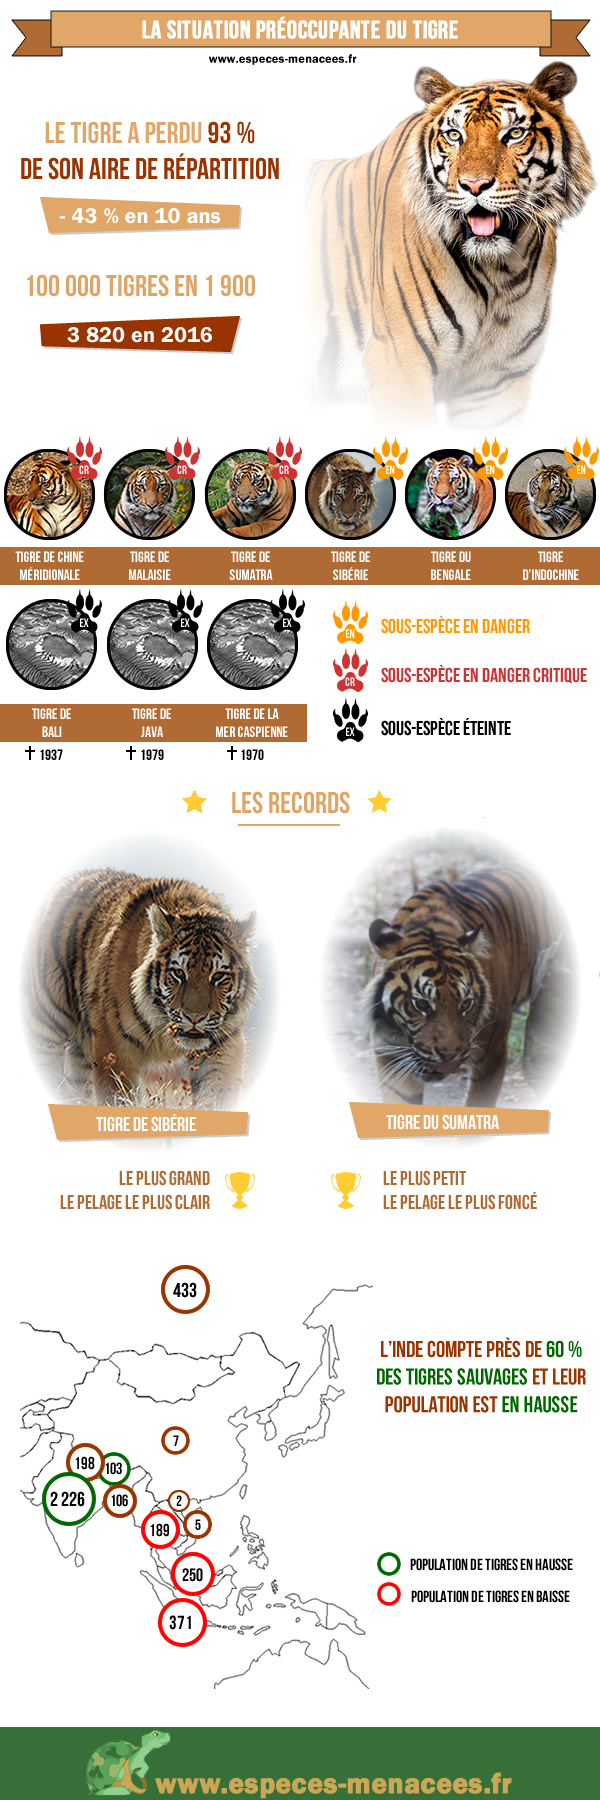 Journée mondiale du tigre de 2017